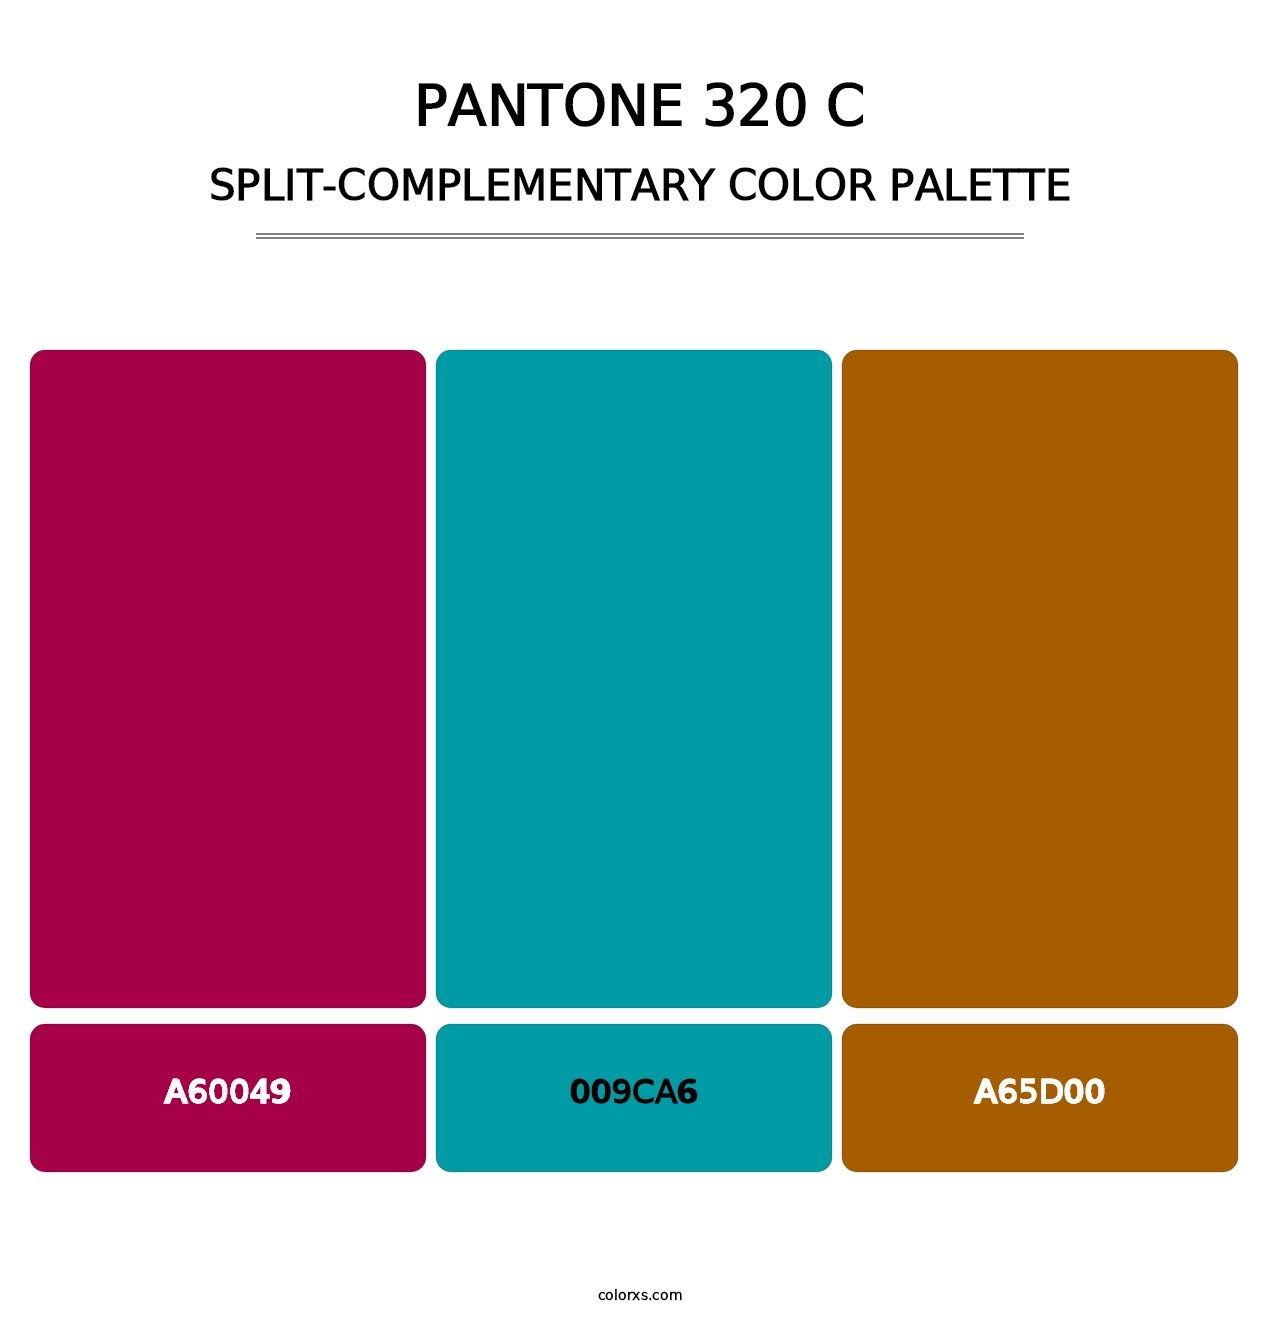 PANTONE 320 C - Split-Complementary Color Palette